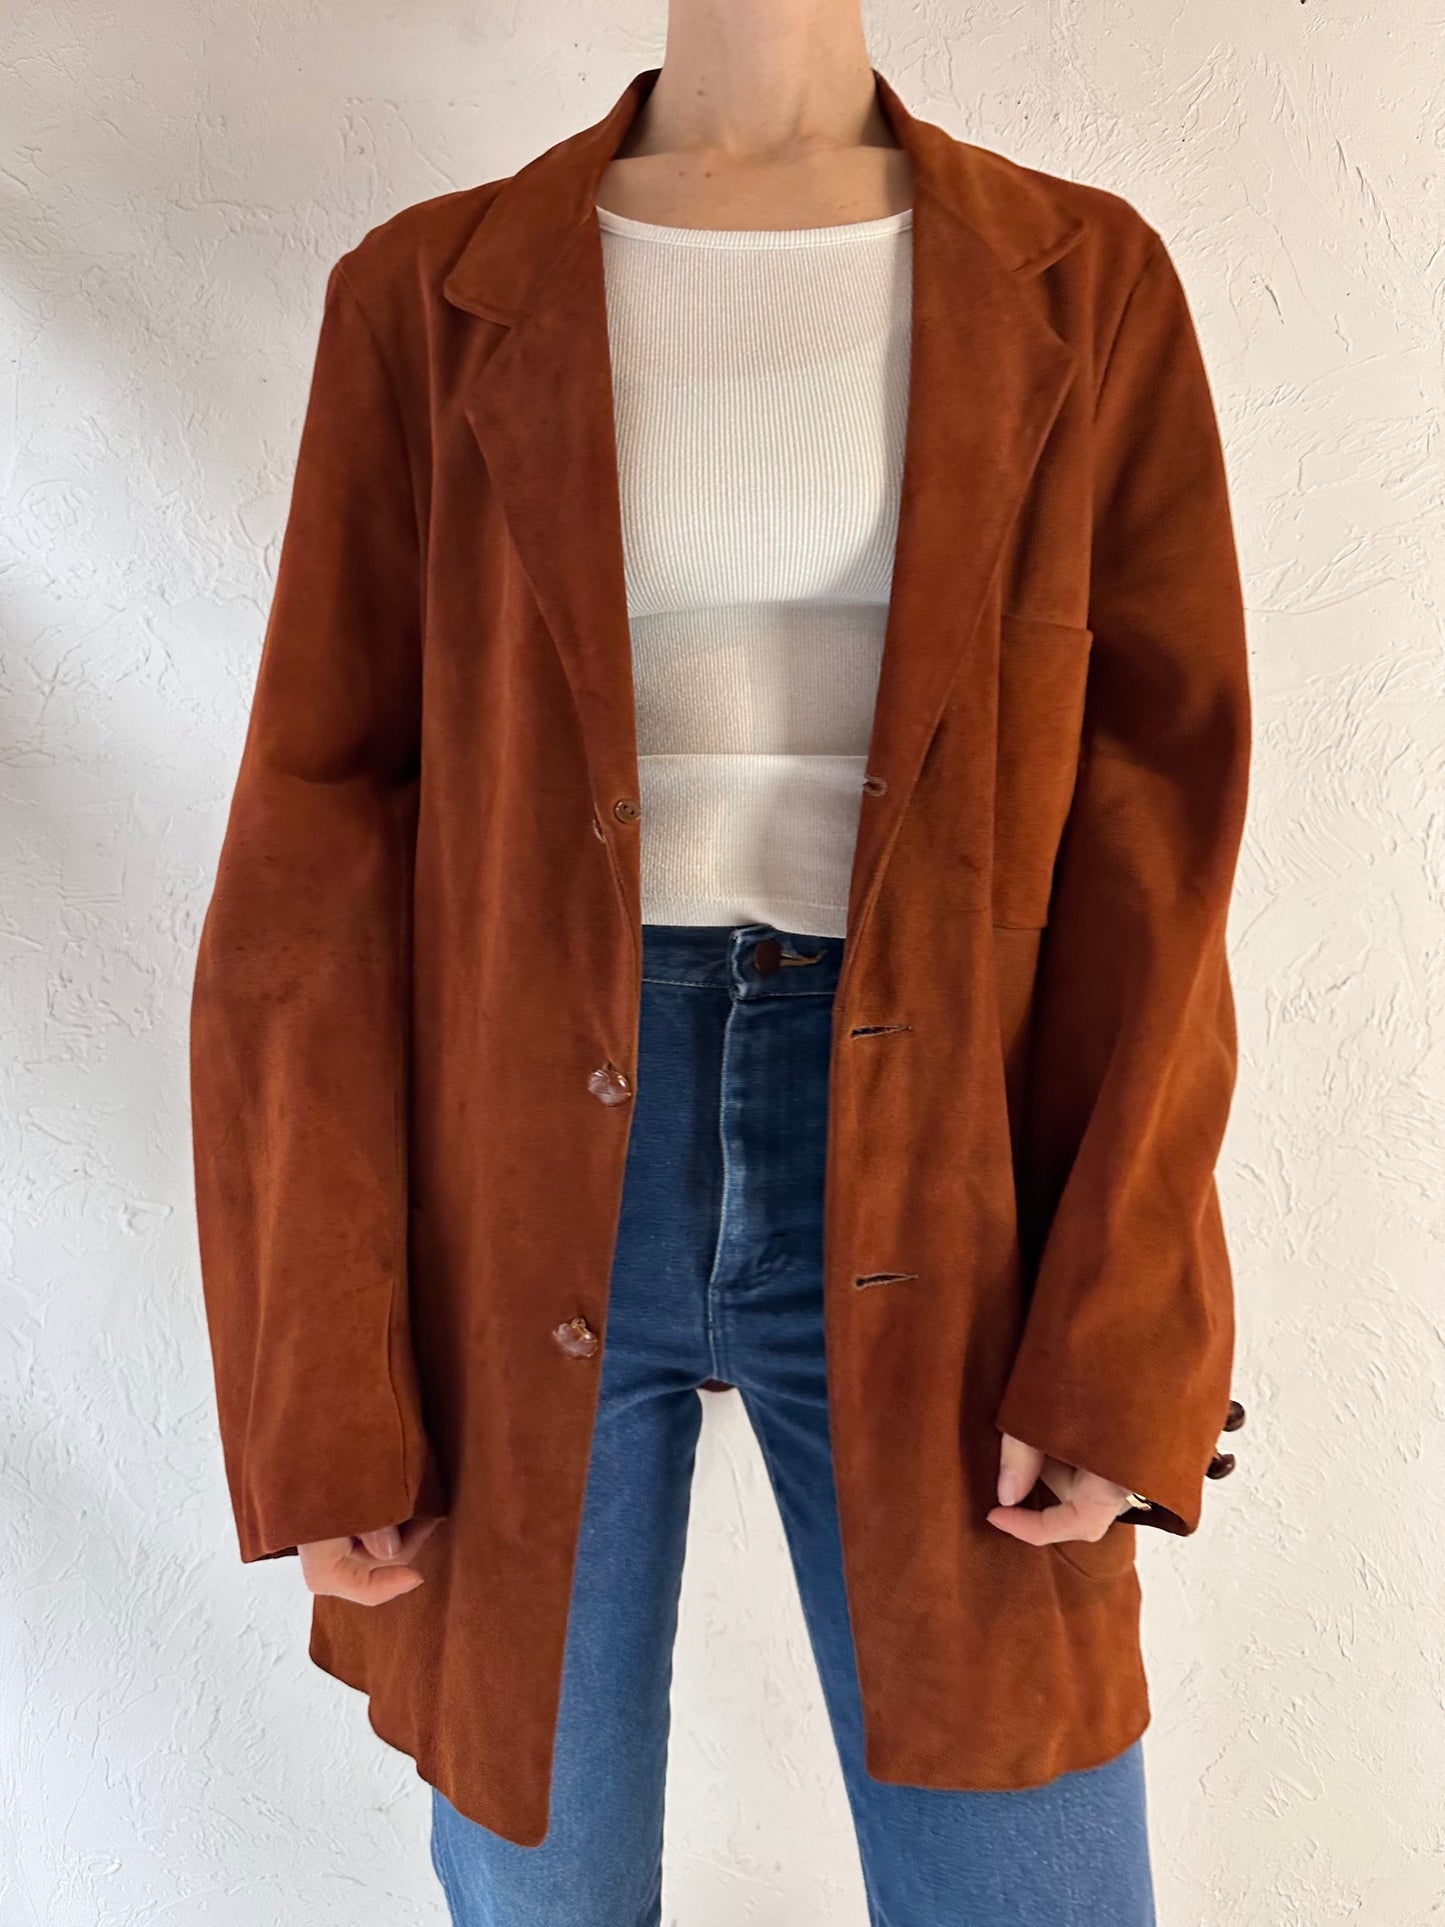 90s 'Fleischer' Brown Suede Leather Jacket / Medium